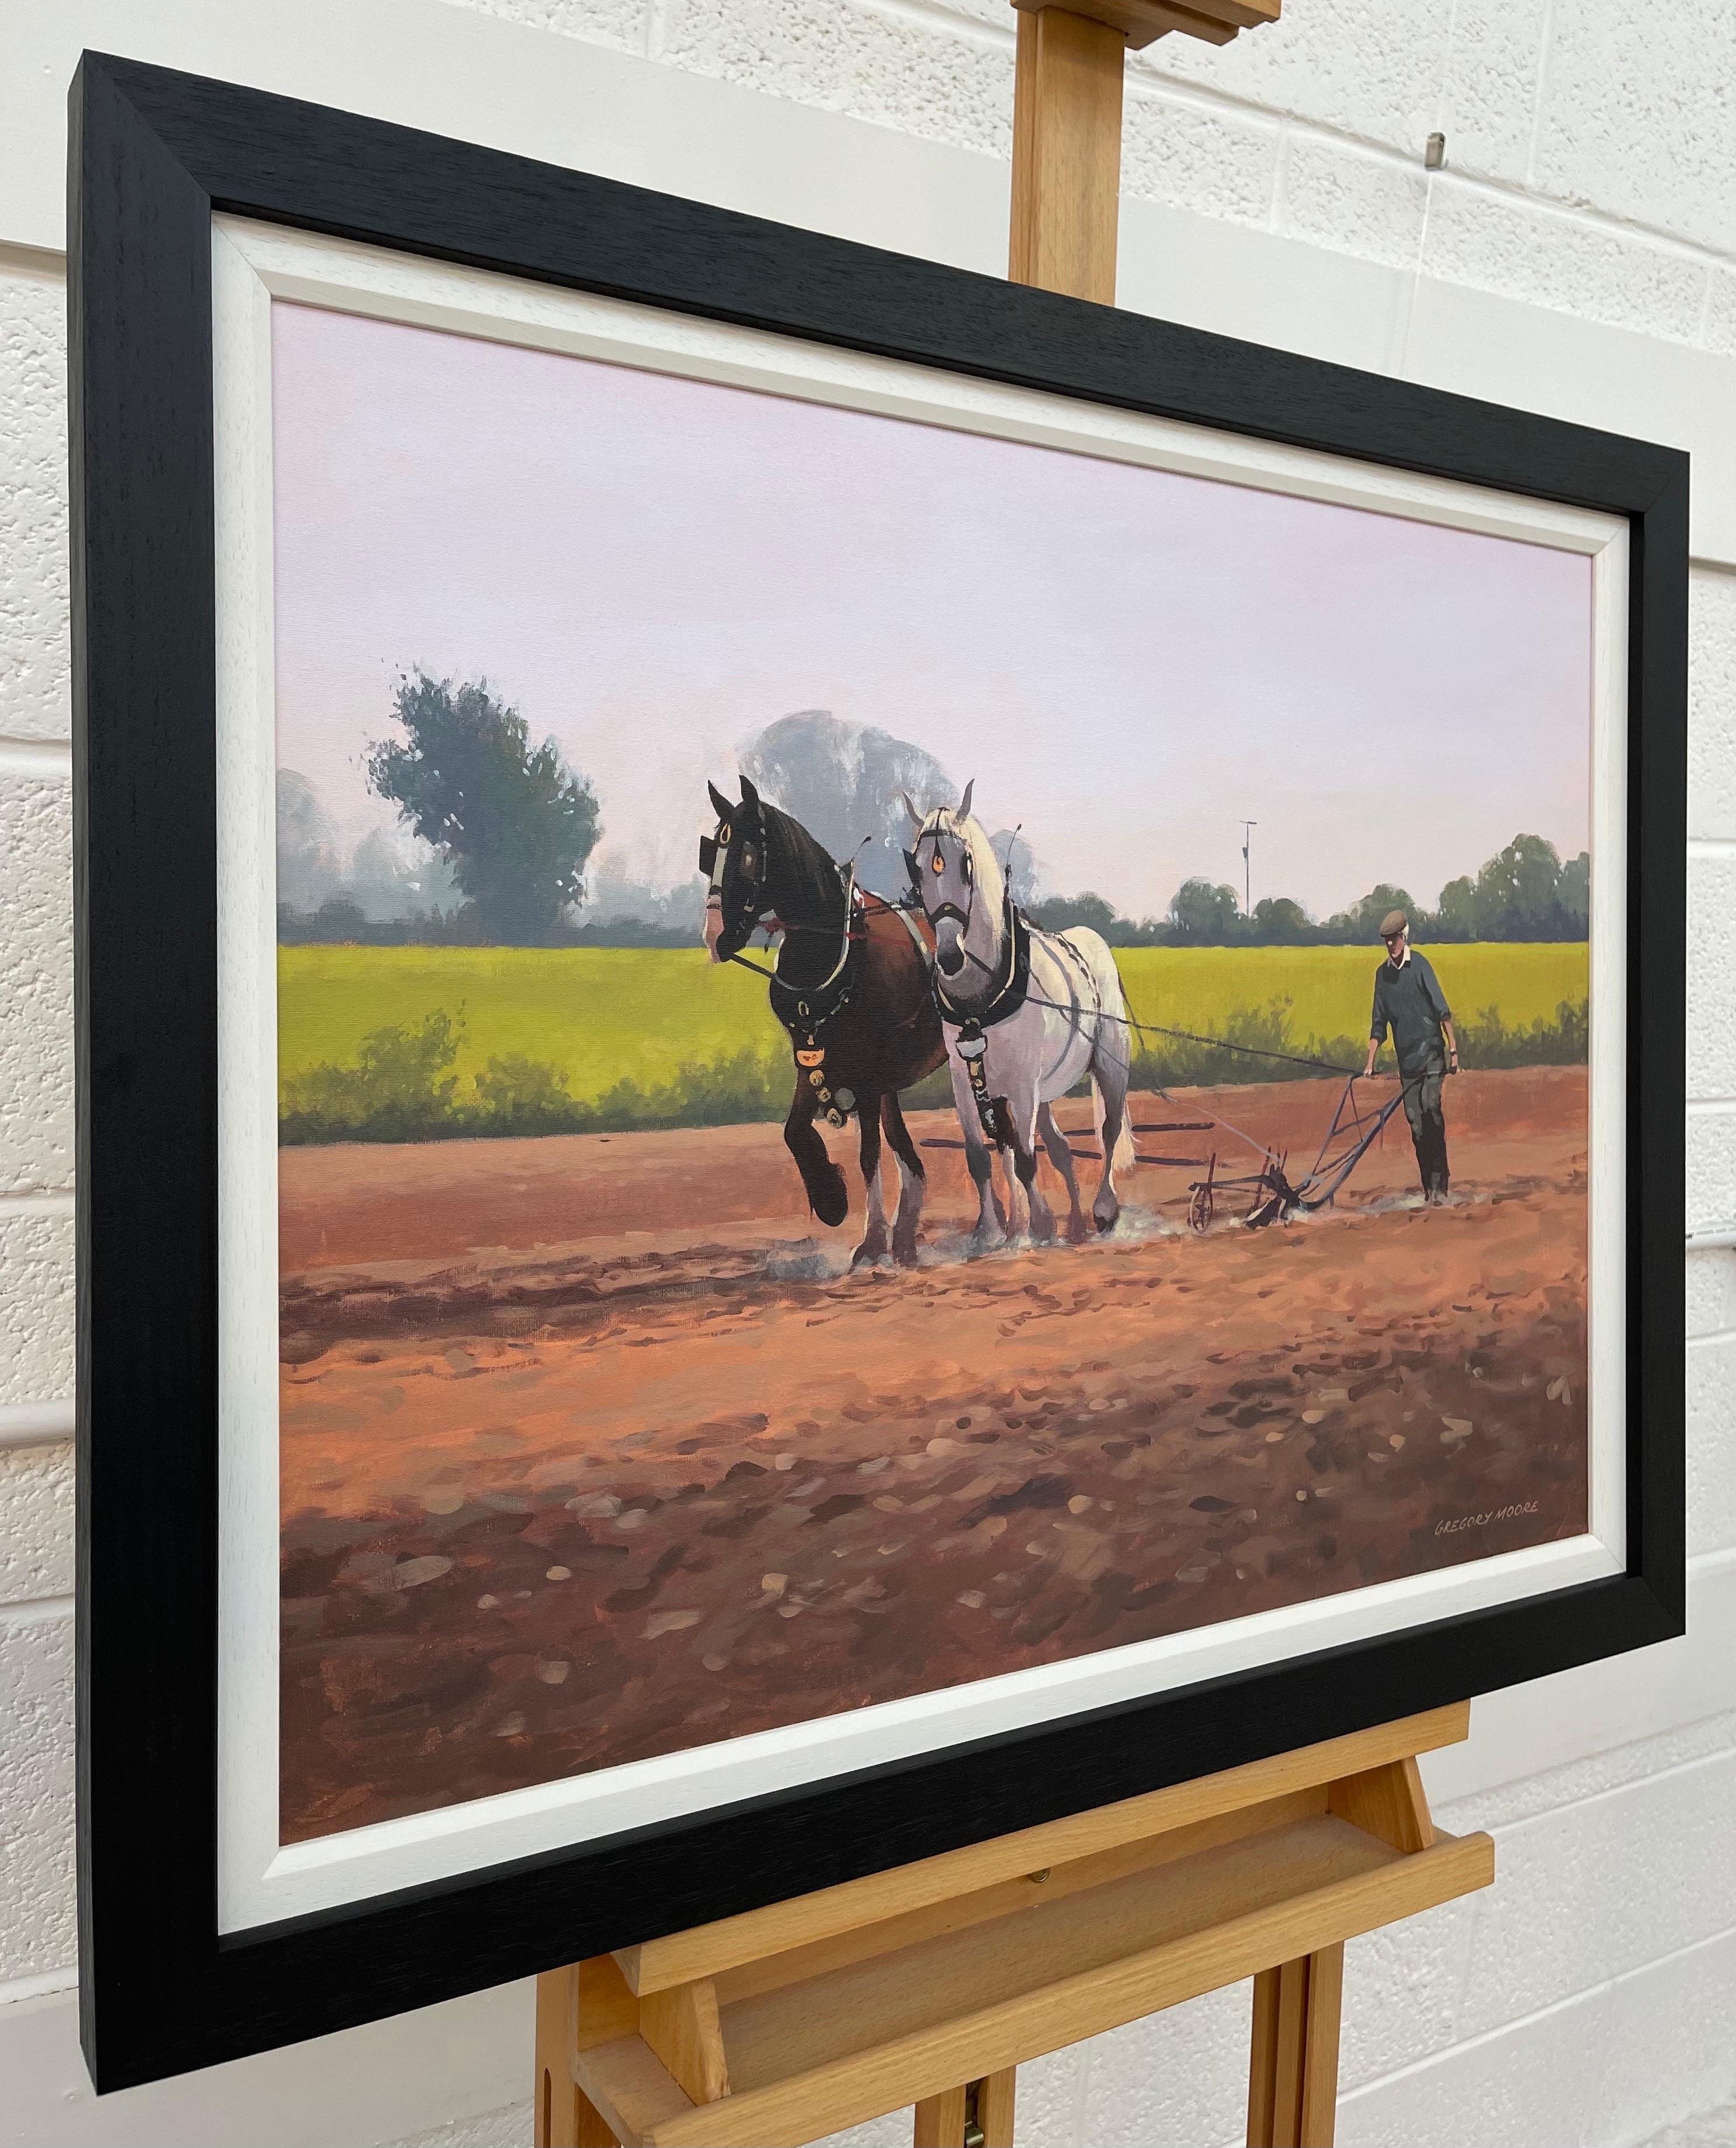 Pferde mit Bauern und Pferden auf dem Lande in Irland von zeitgenössischem irischen Künstler – Painting von Gregory Moore